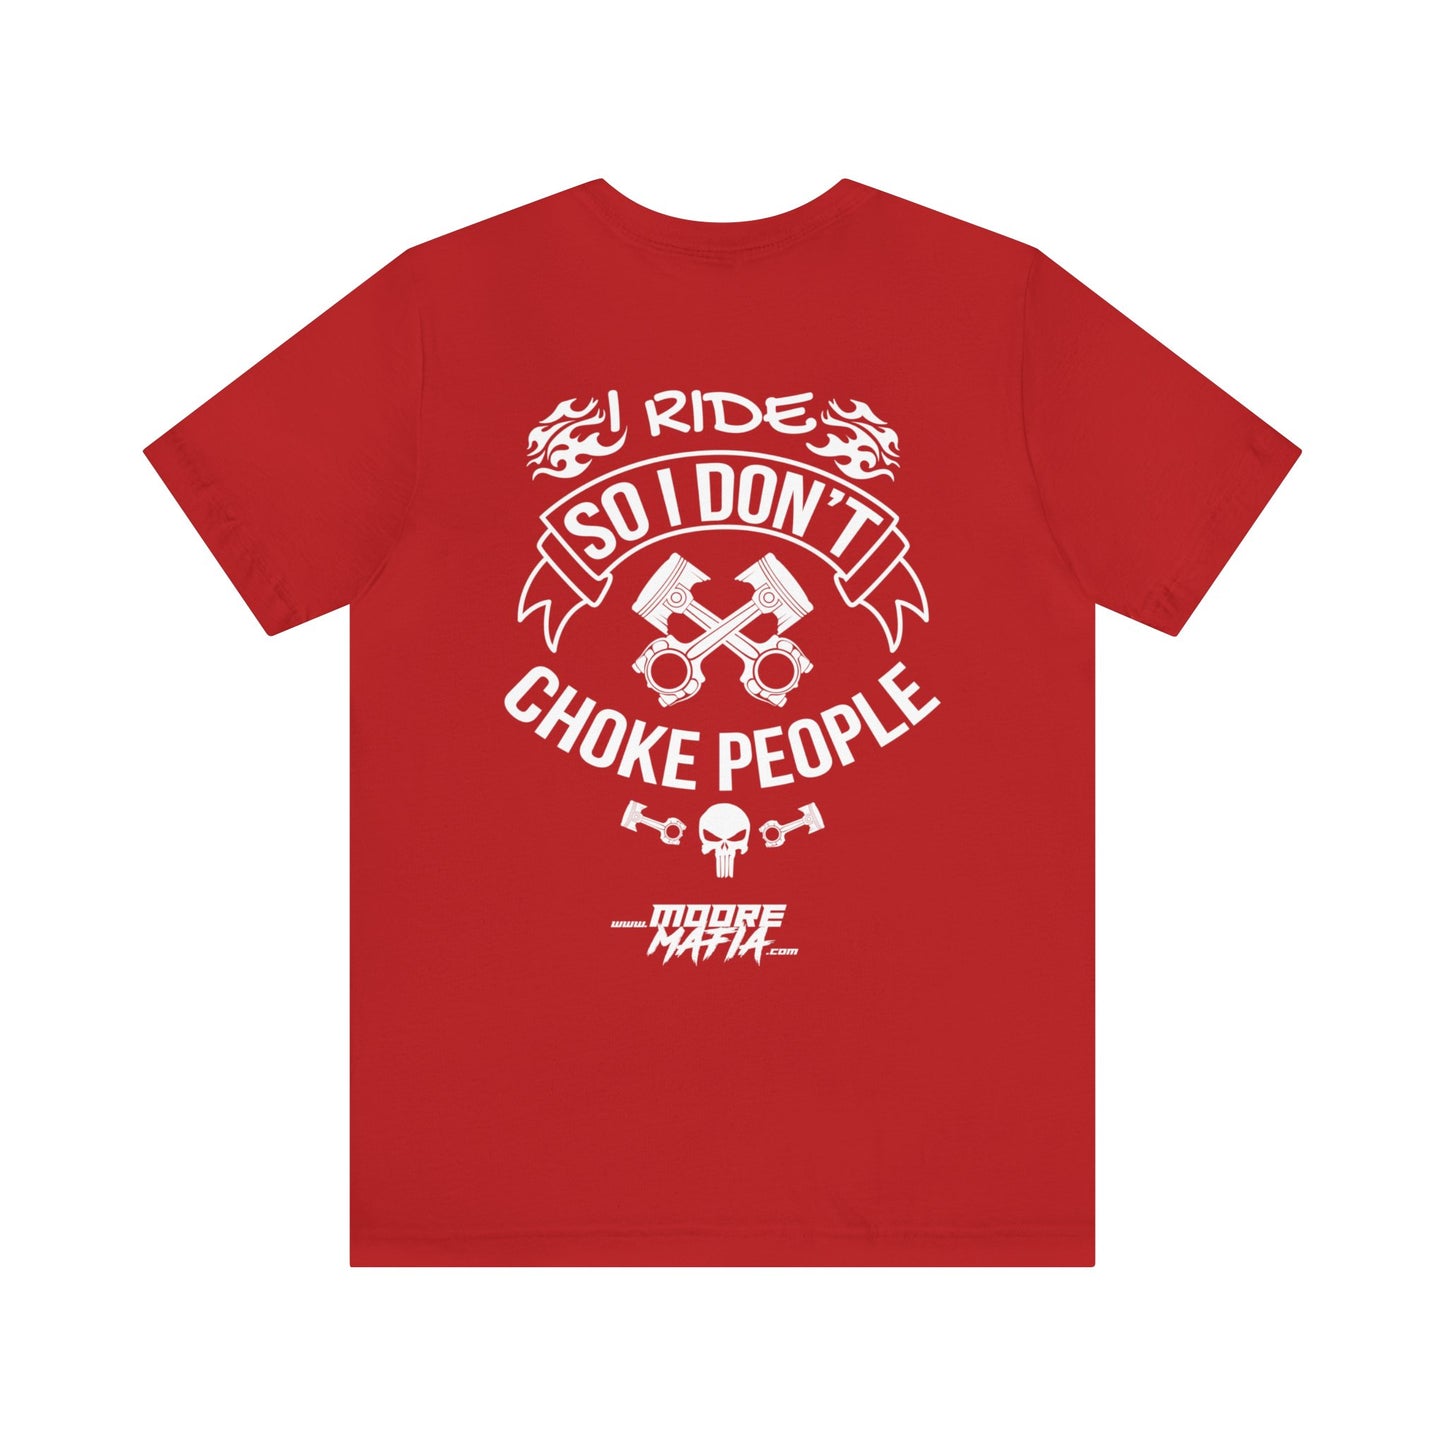 I Ride So I Don't Choke People Unisex T-Shirt